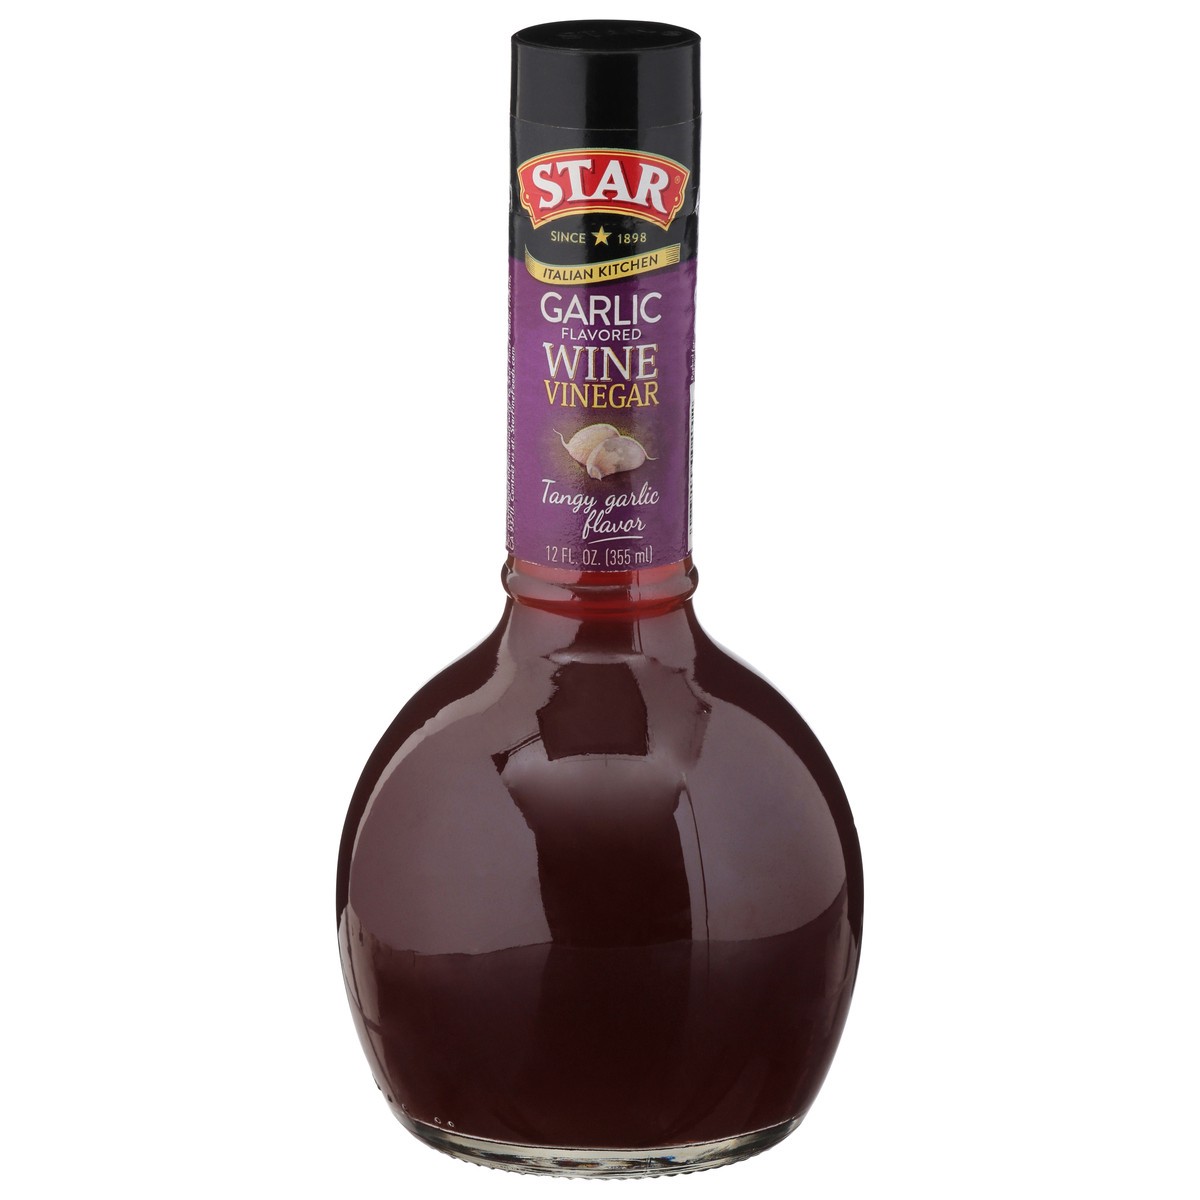 slide 10 of 10, STAR Italian Kitchen Wine Garlic Flavored Wine Vinegar 12 fl oz, 